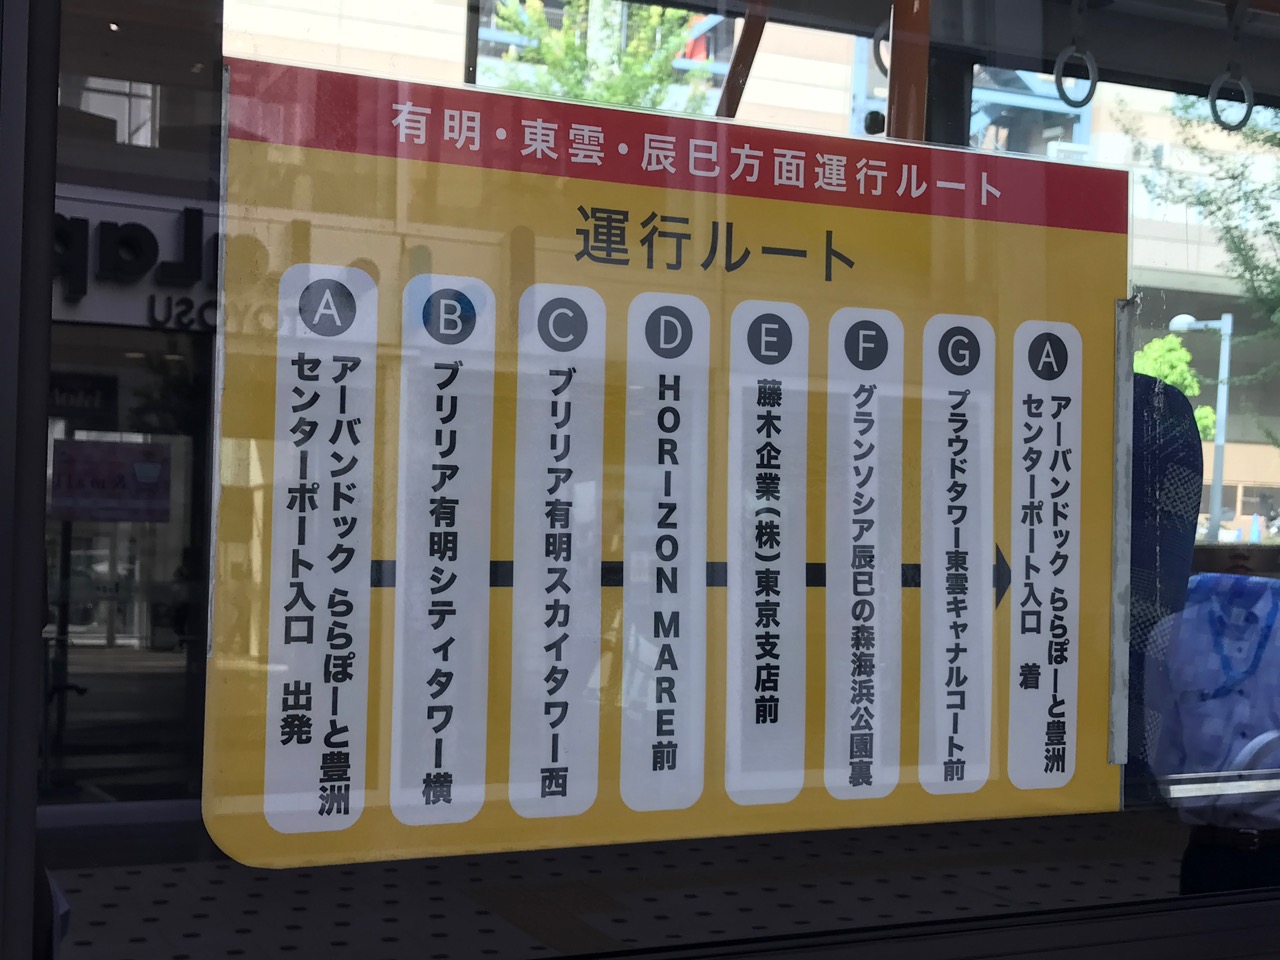 ららぽーと豊洲の無料シャトルバス、有明・東雲・辰巳を走る運行ルートを新設